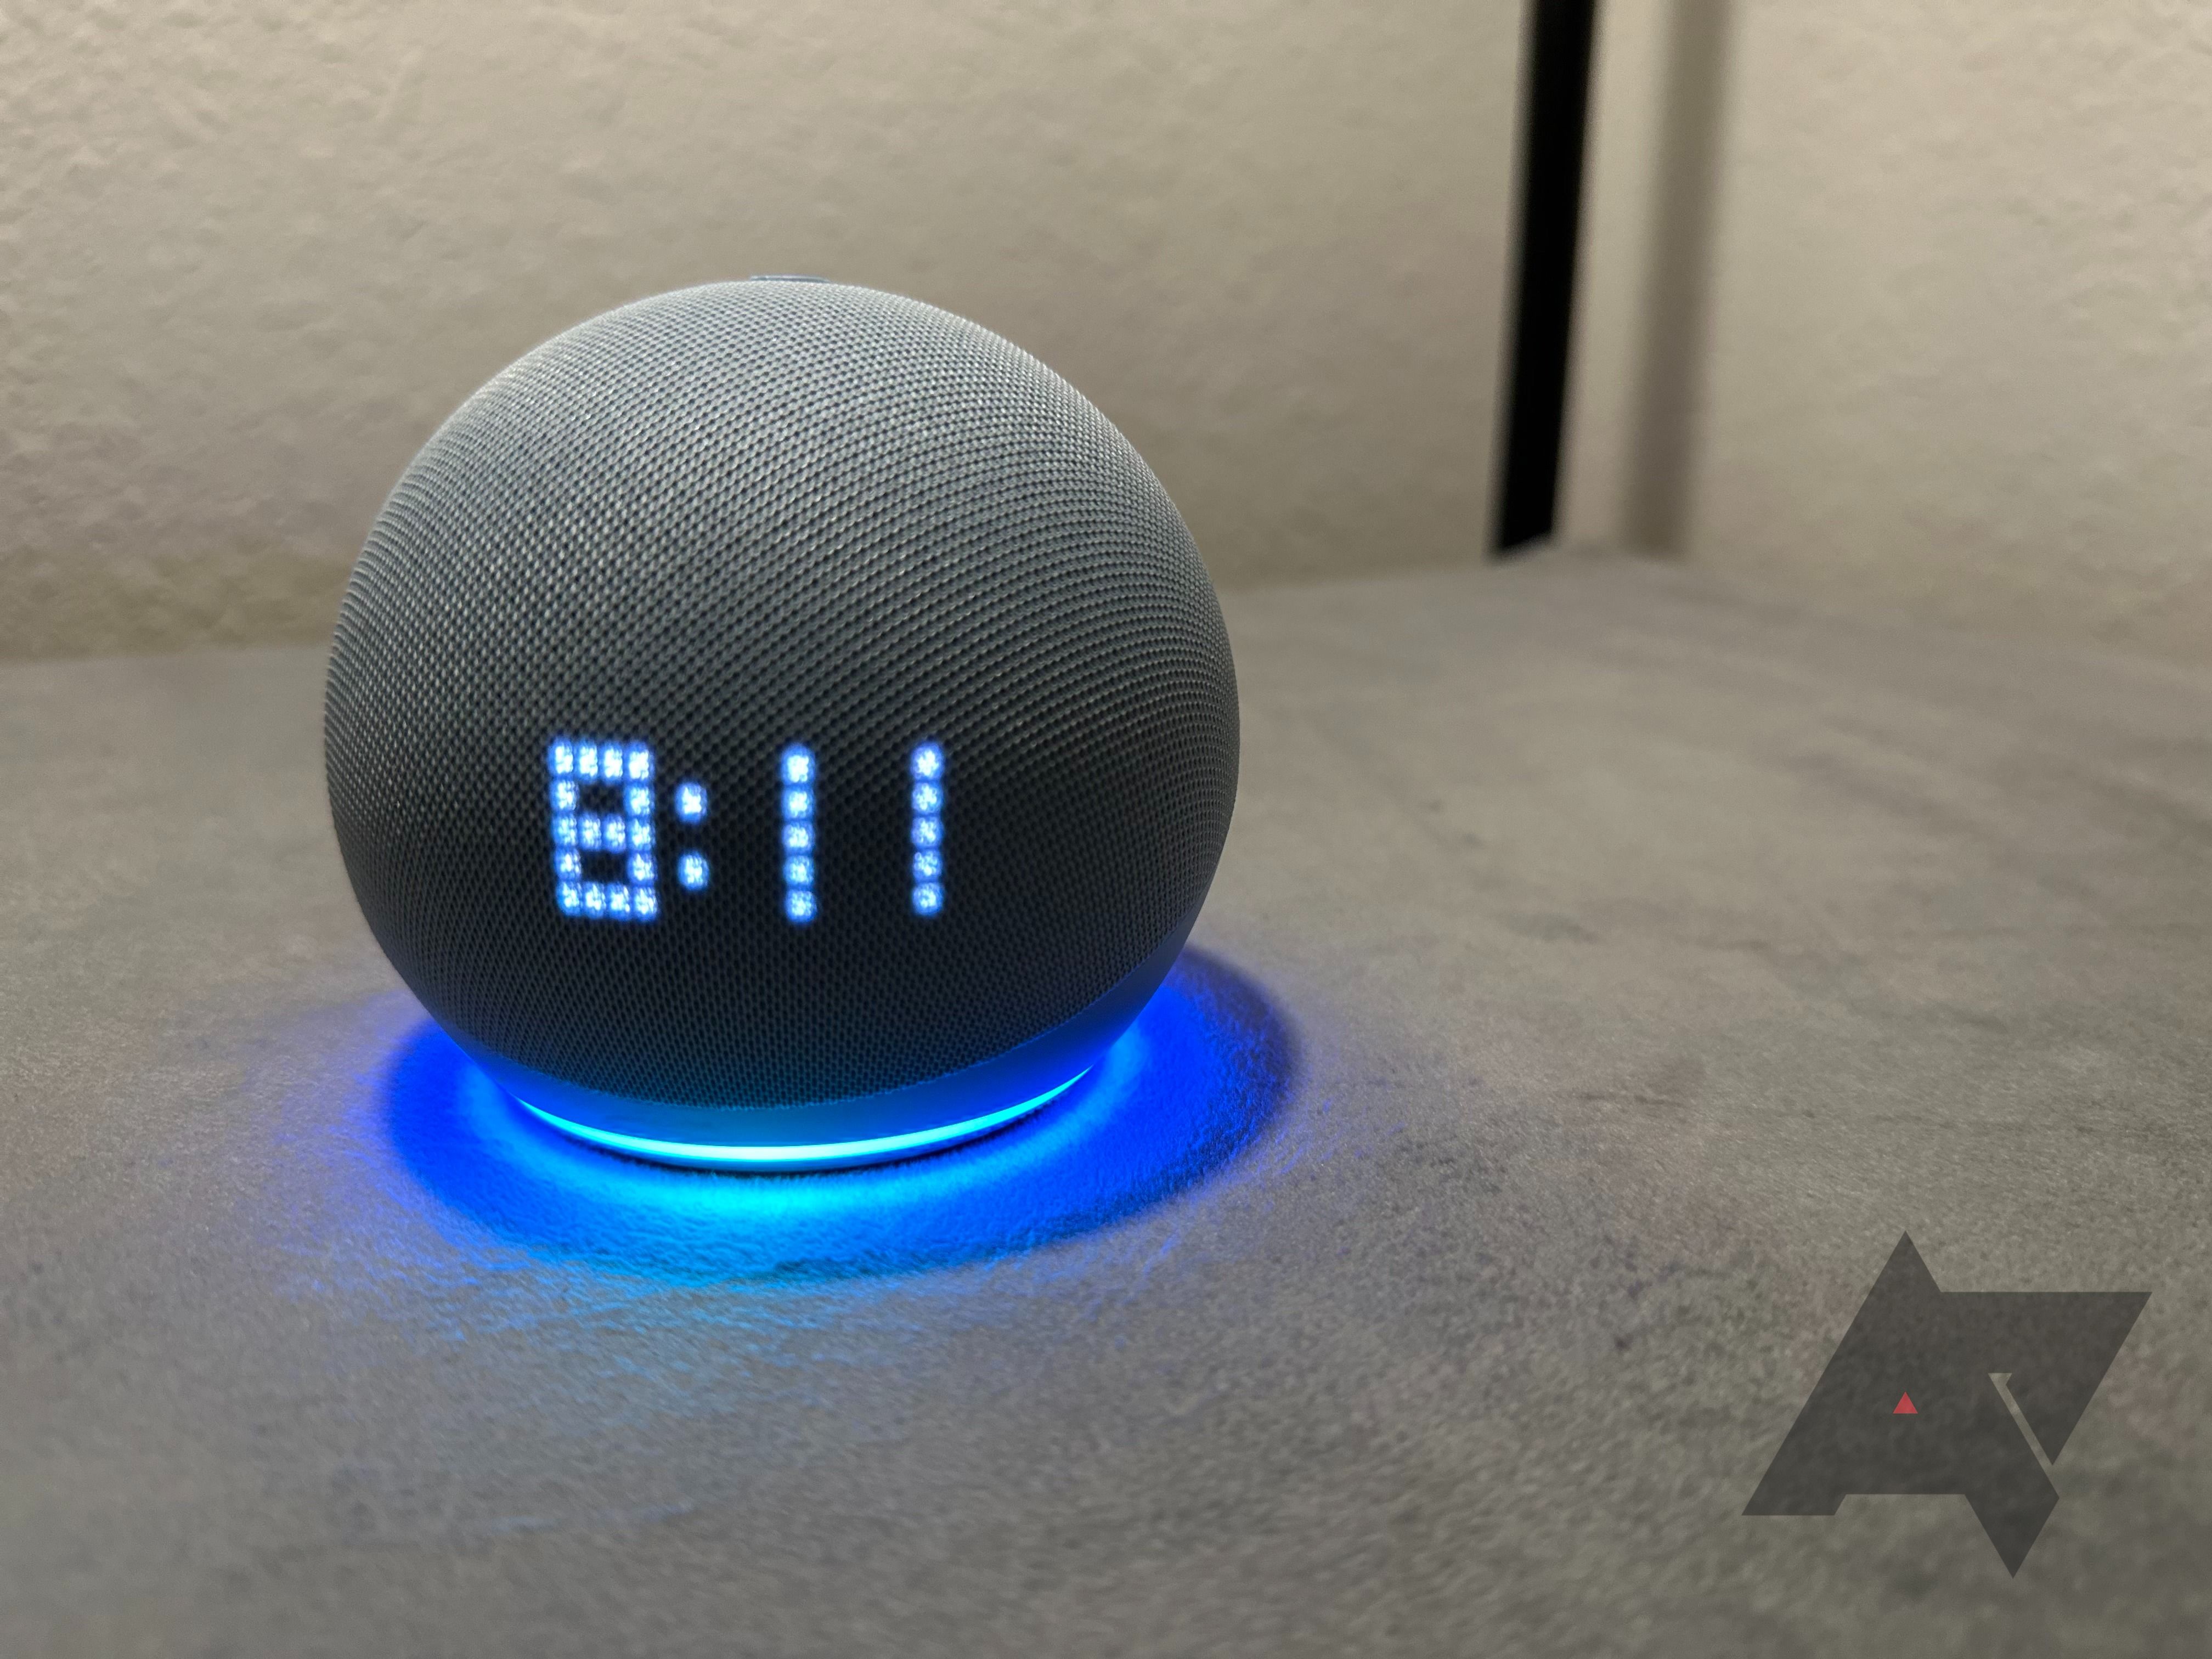 Um Amazon Echo Dot com relógio com uma luz azul brilhante mostrando a hora